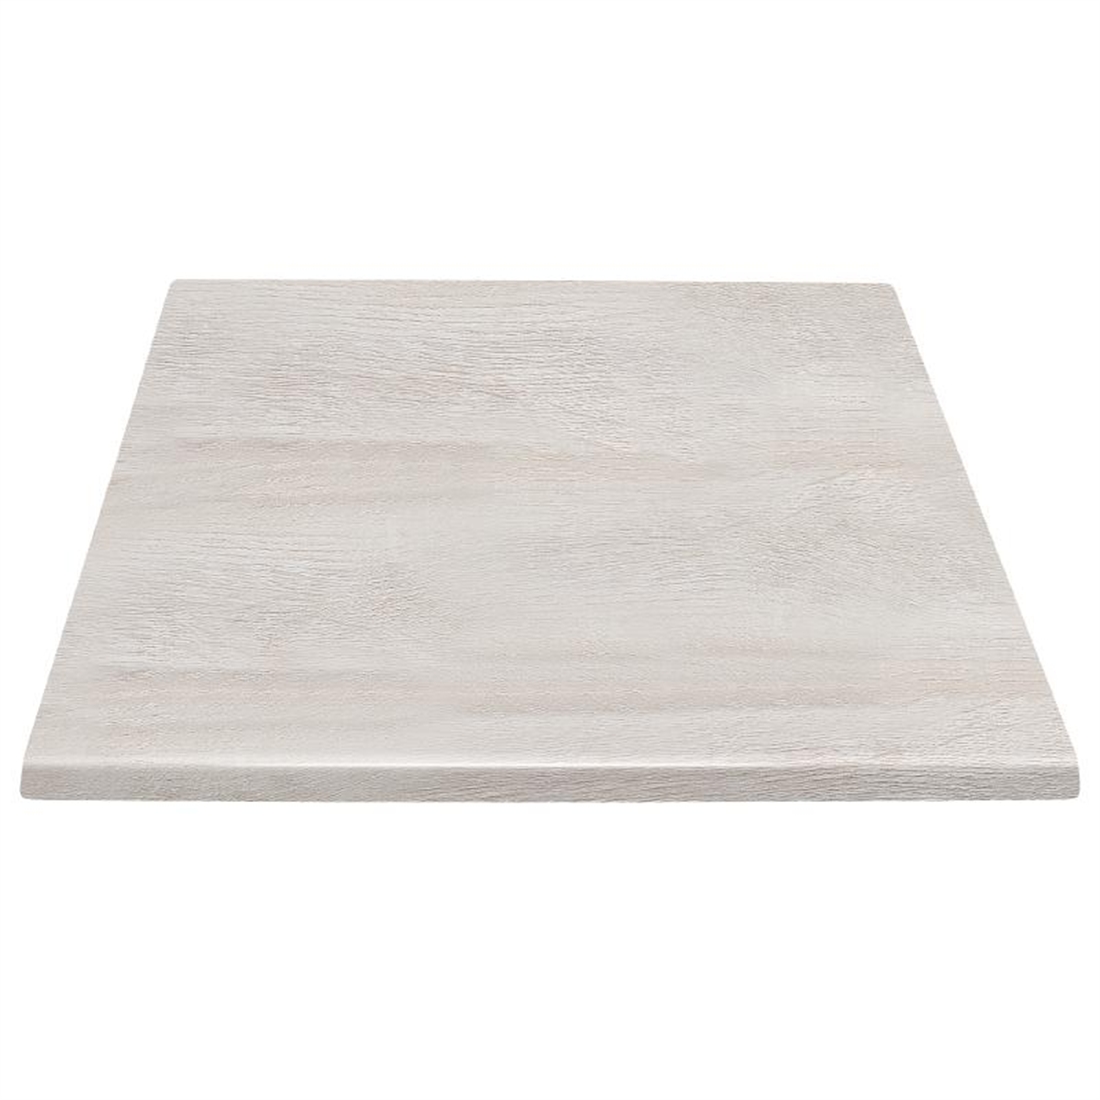 Bolero Pre-drilled Square Table Top Whitewash 600mm